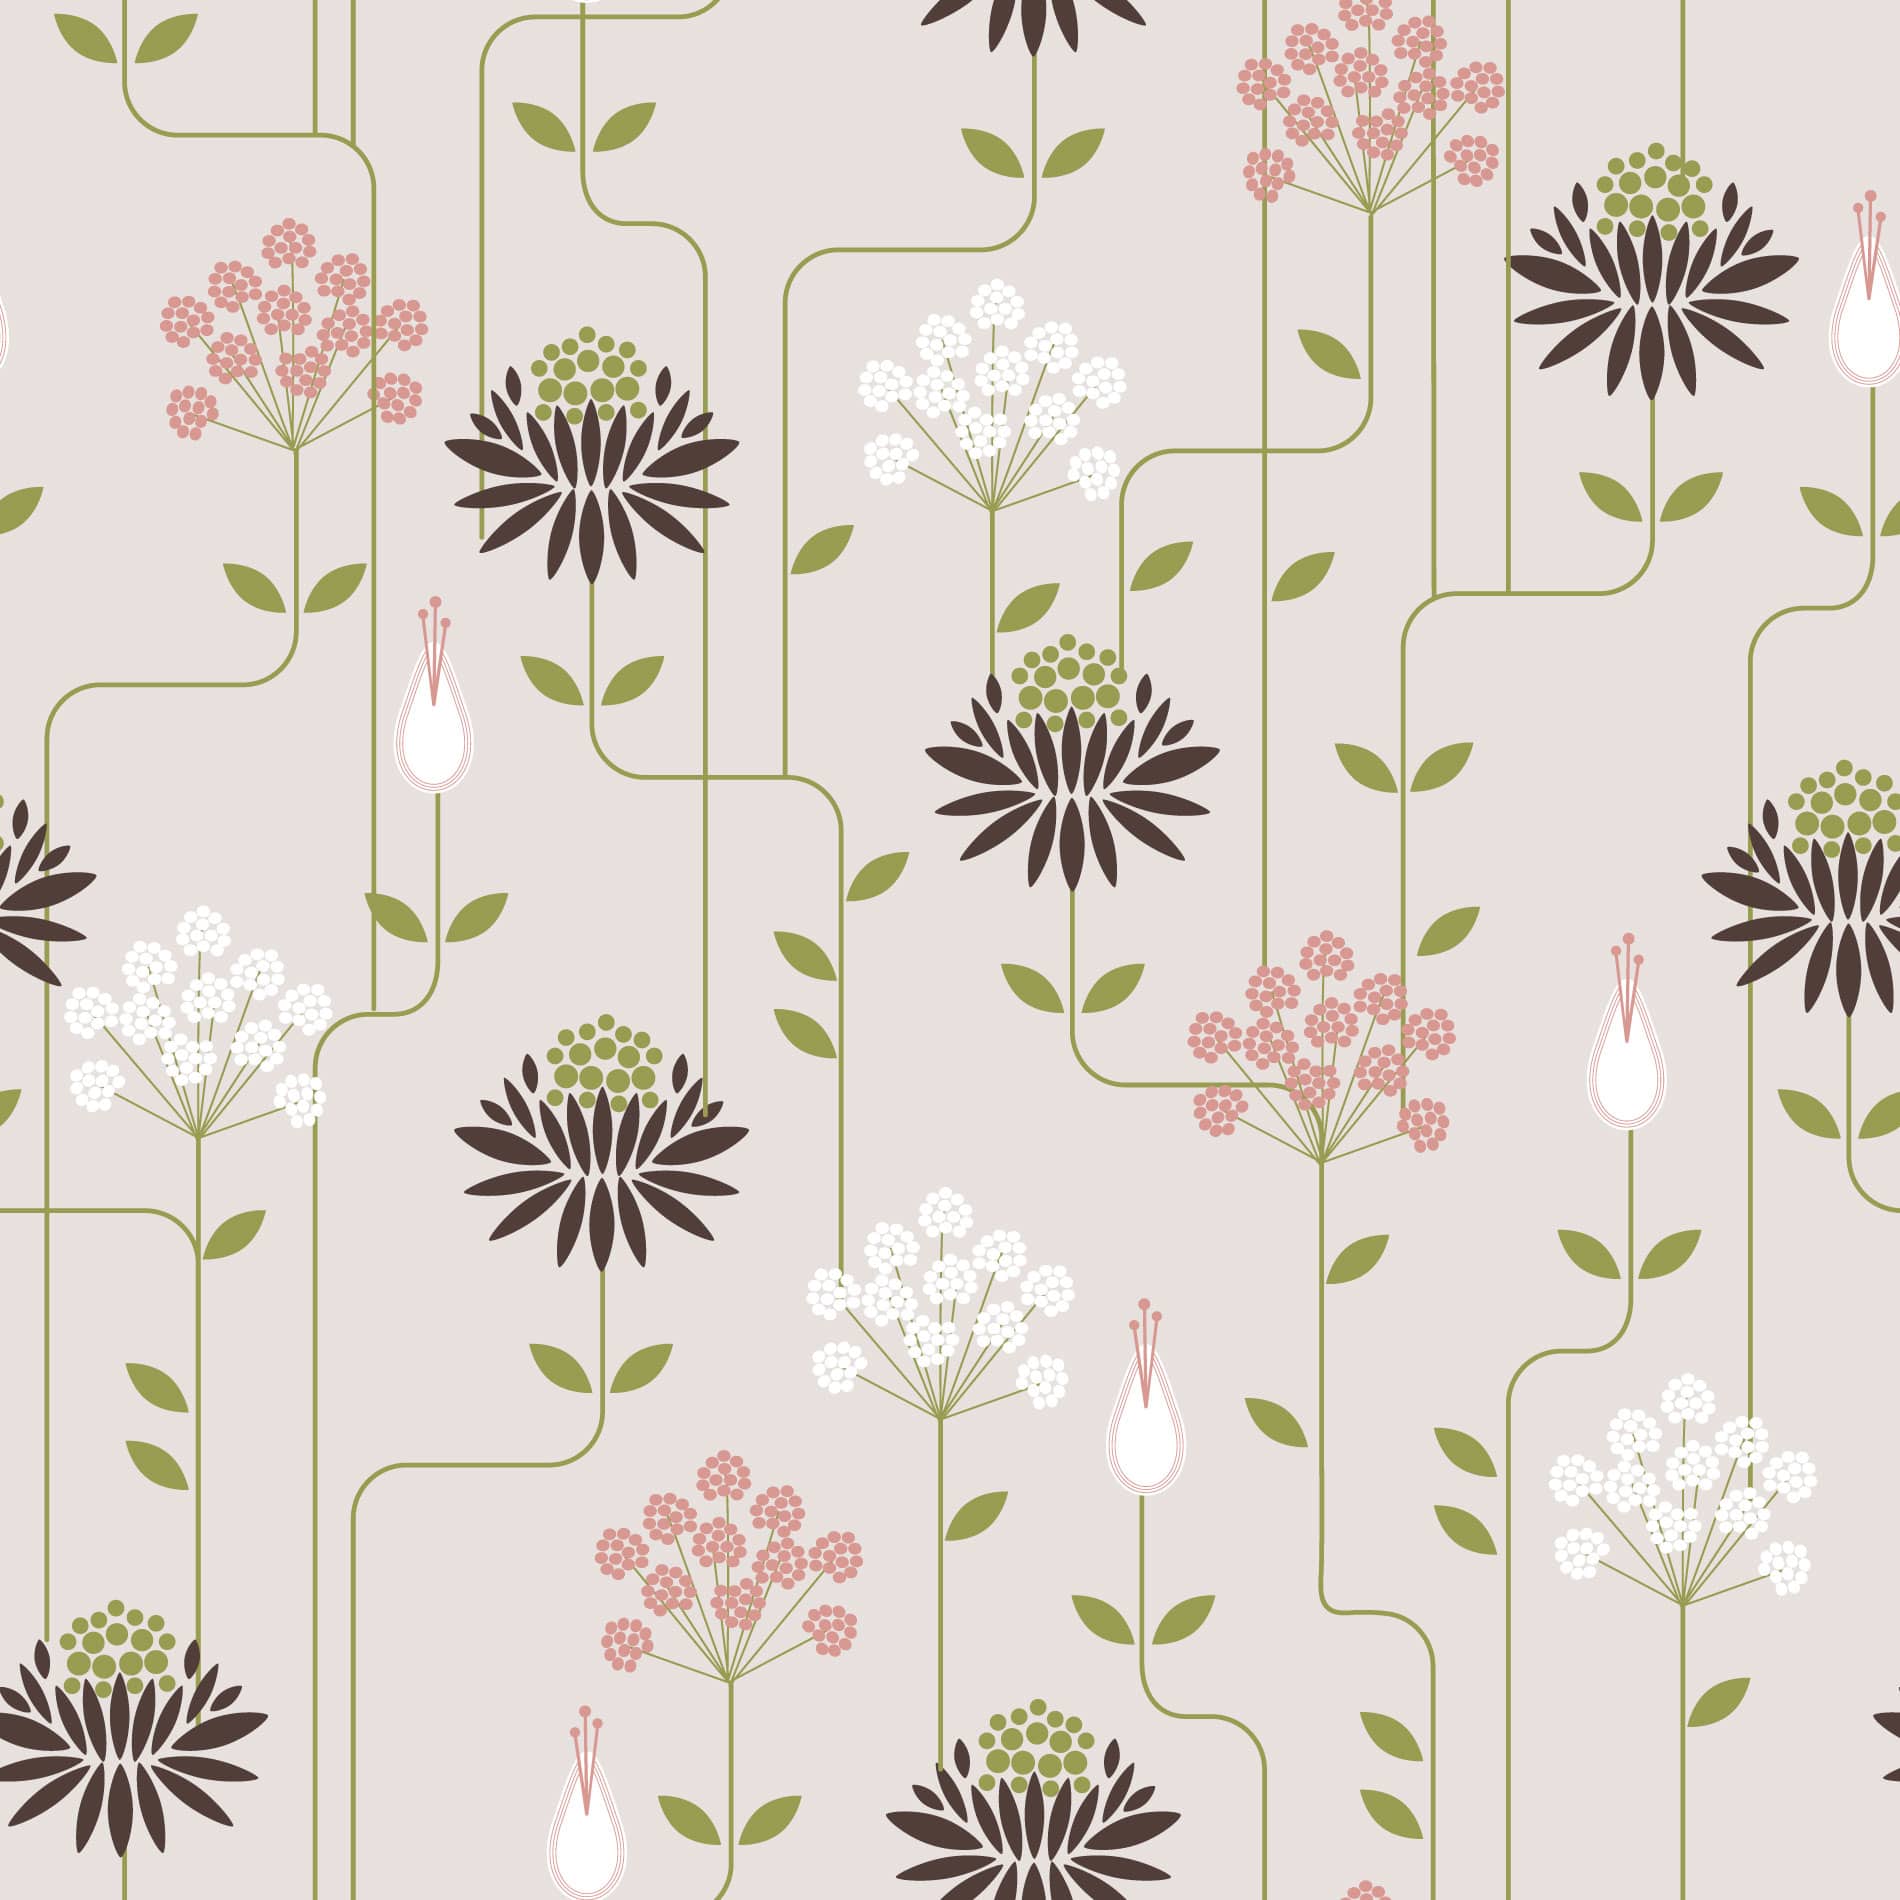 Art deco floral wallpaper